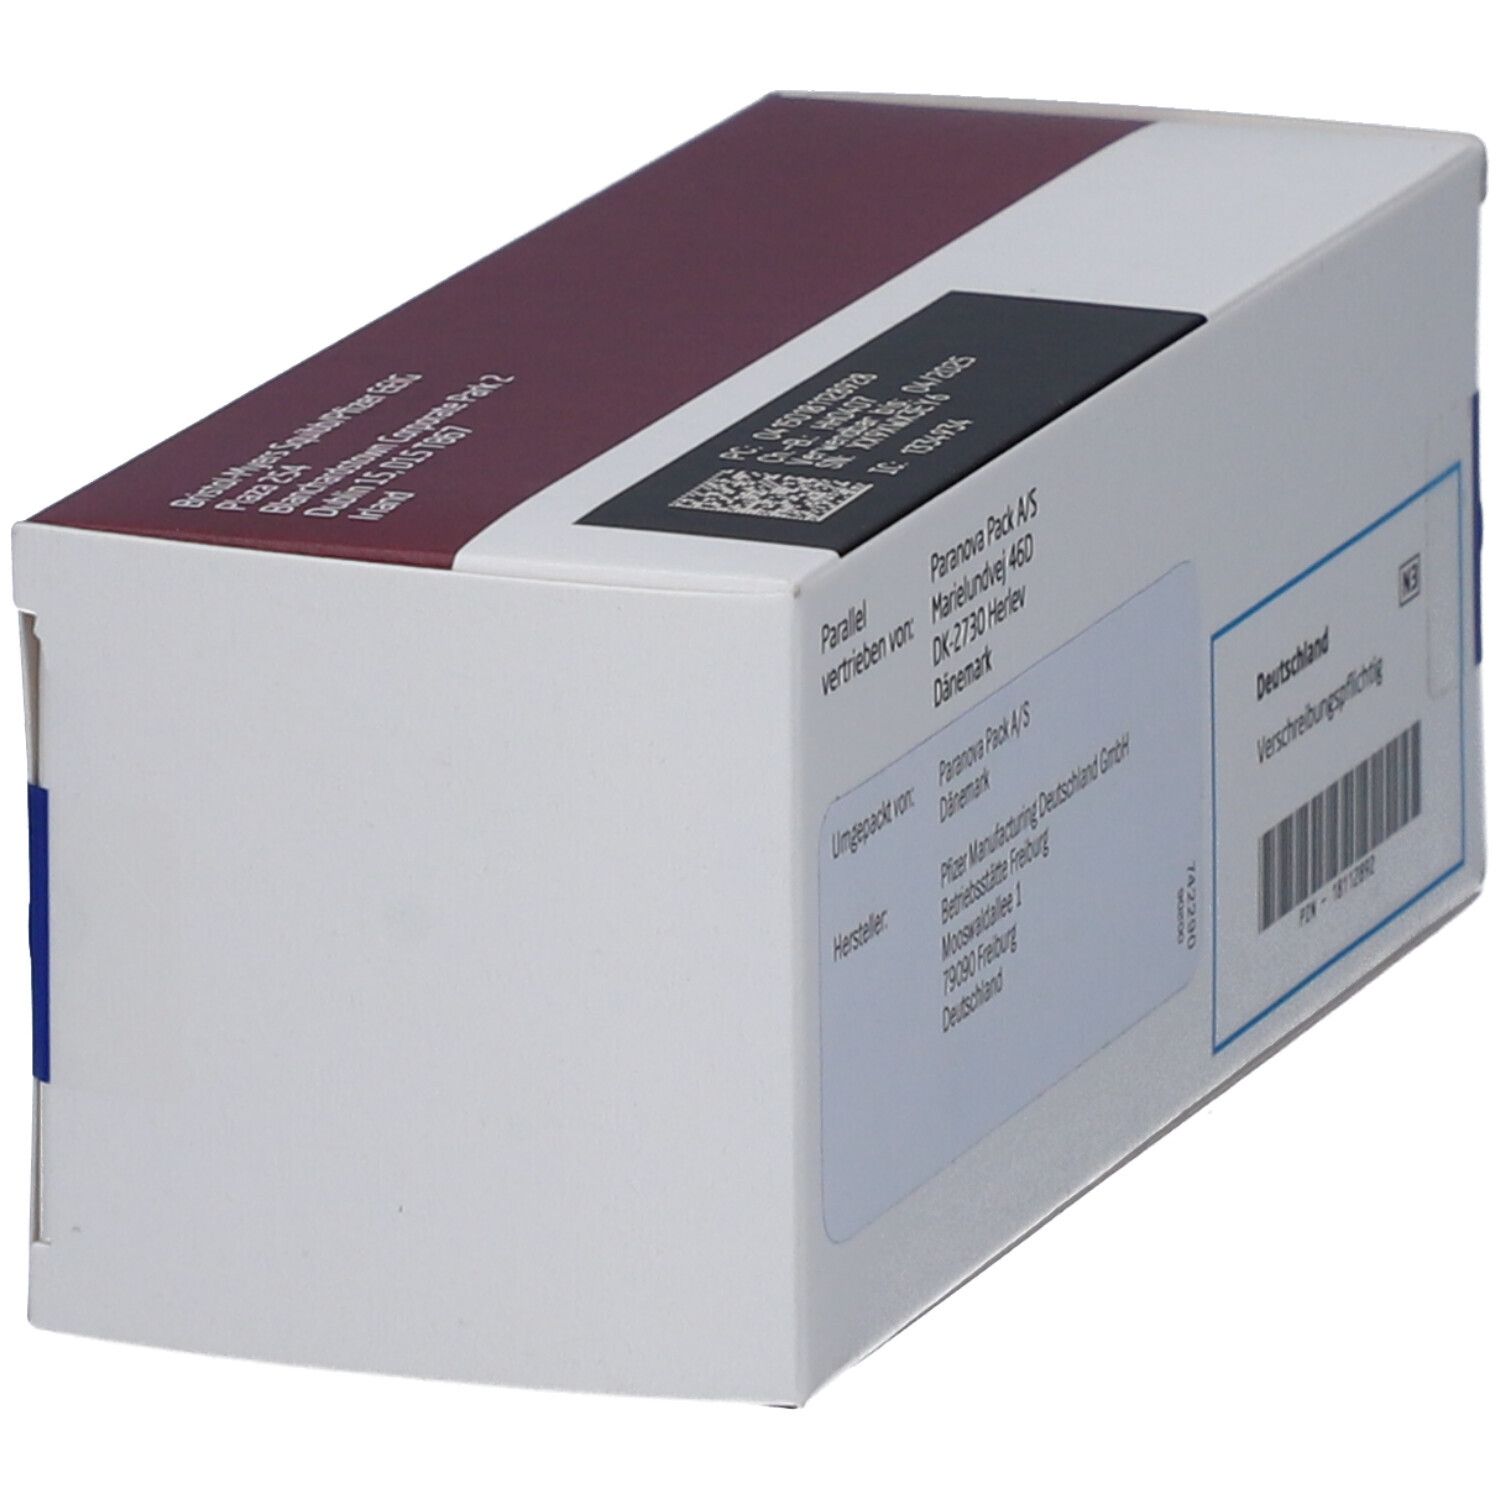 ELIQUIS 2,5 mg Filmtabletten